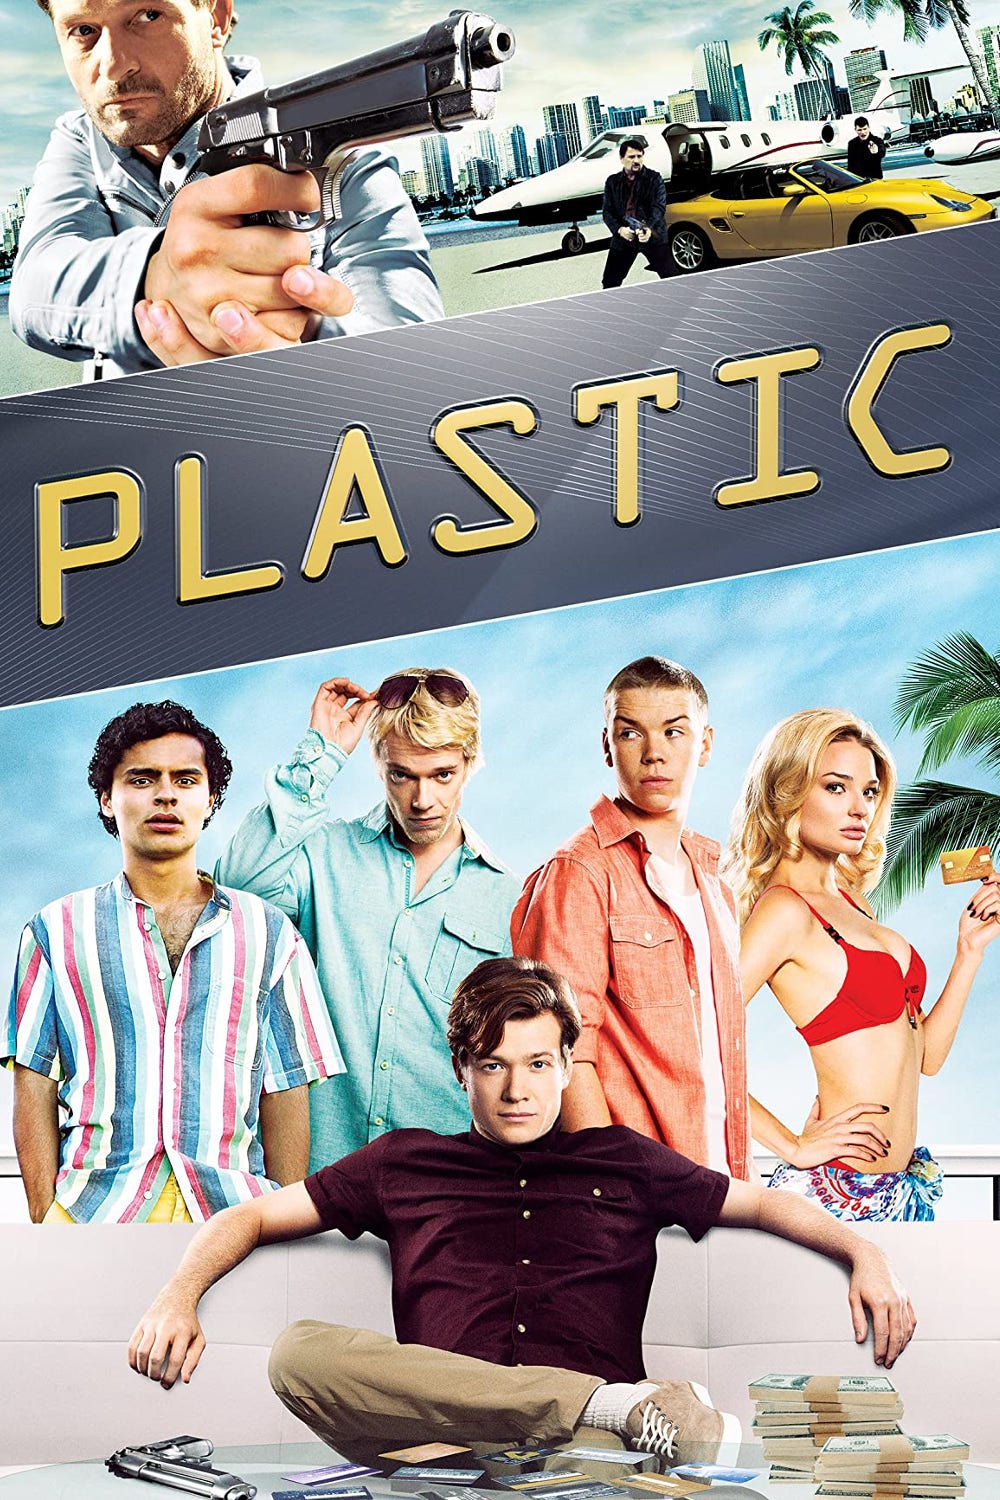 Plastic [Sub-ITA] (2014)